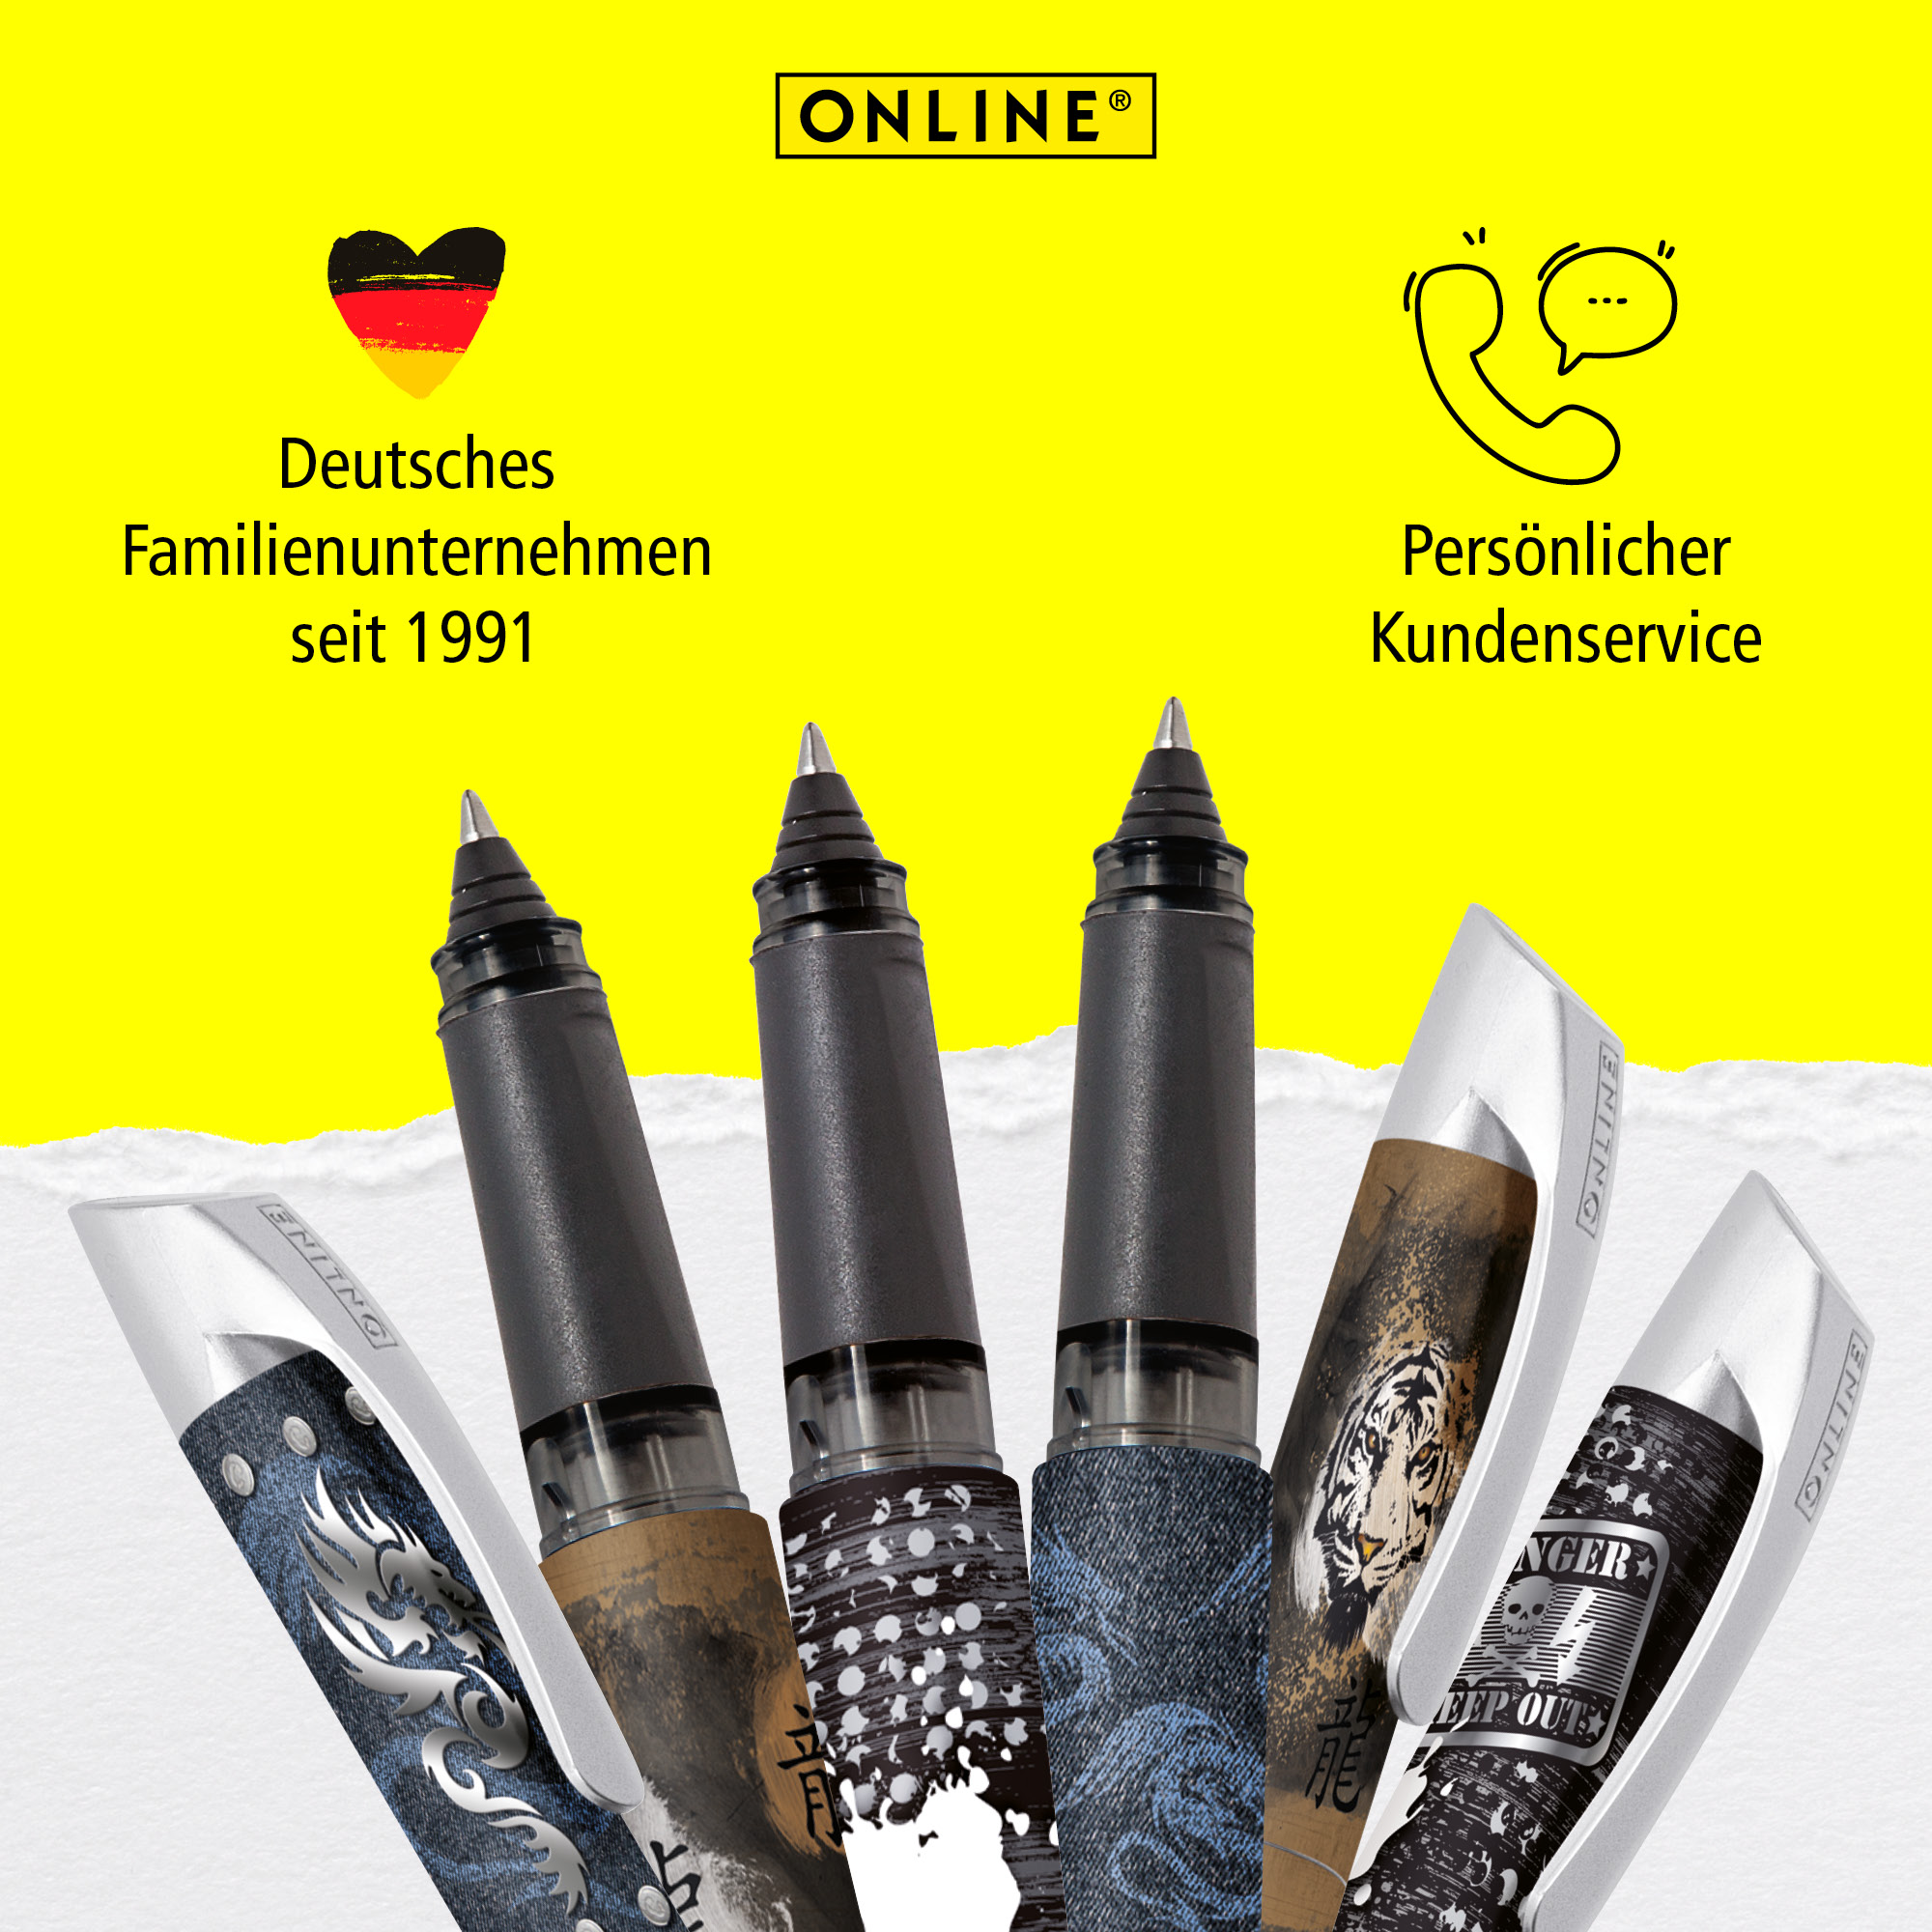 Deutsches Familienunternehmen seit 1991 mit persönlichem Kundenservice